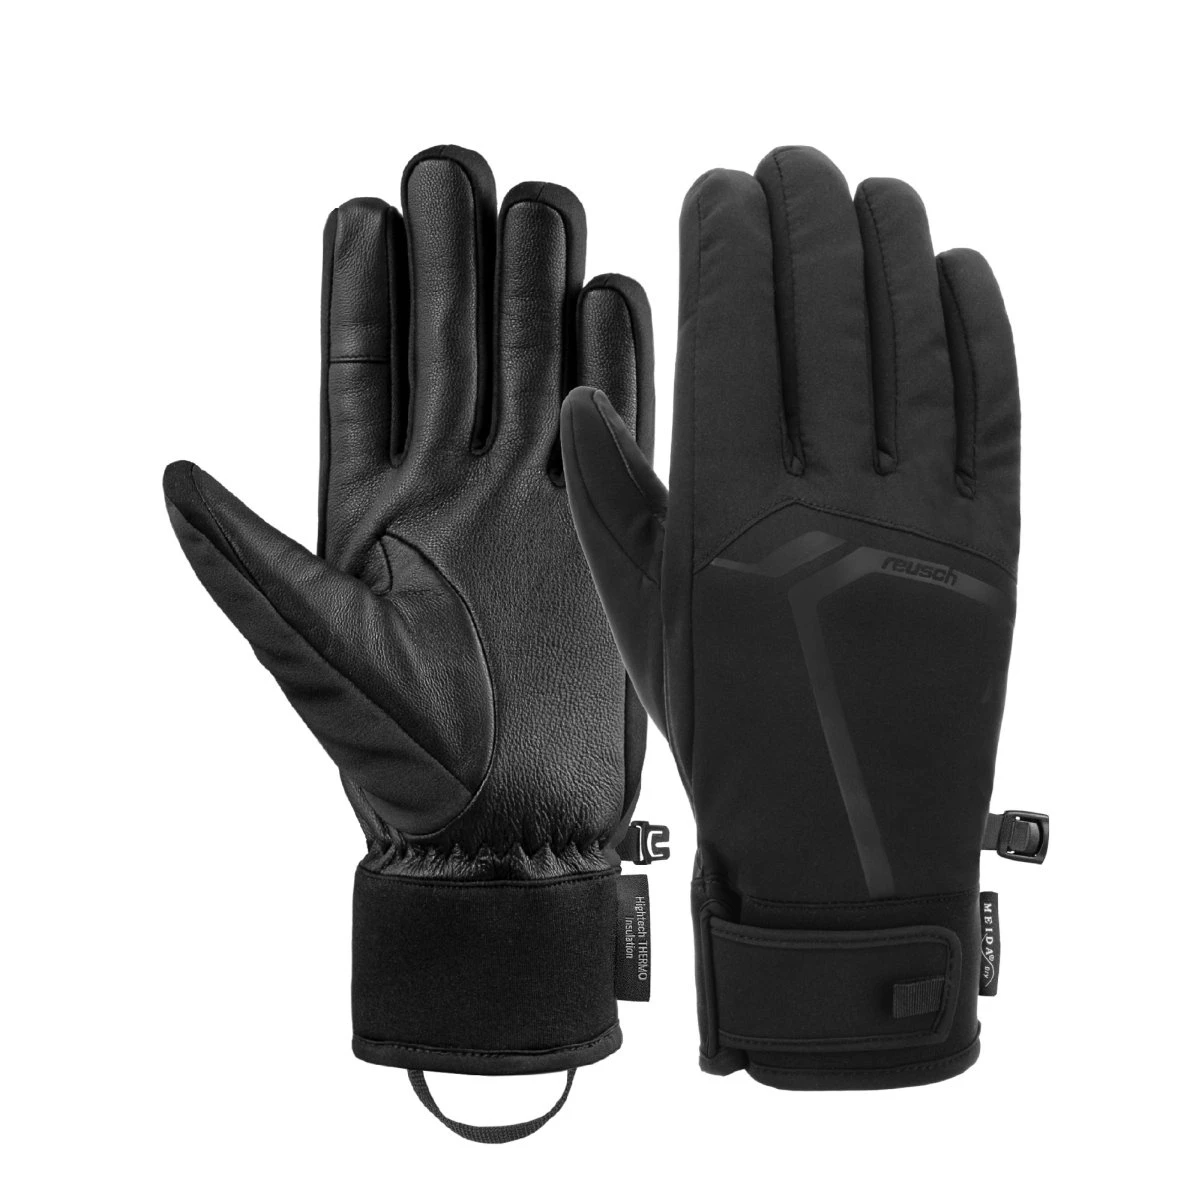 Reusch Ryan Meida Dry Touch-Tec Handschoen - Handschoenen -  Wintersportkleding - Wintersport - Sporten - Intersport van den Broek /  Biggelaar